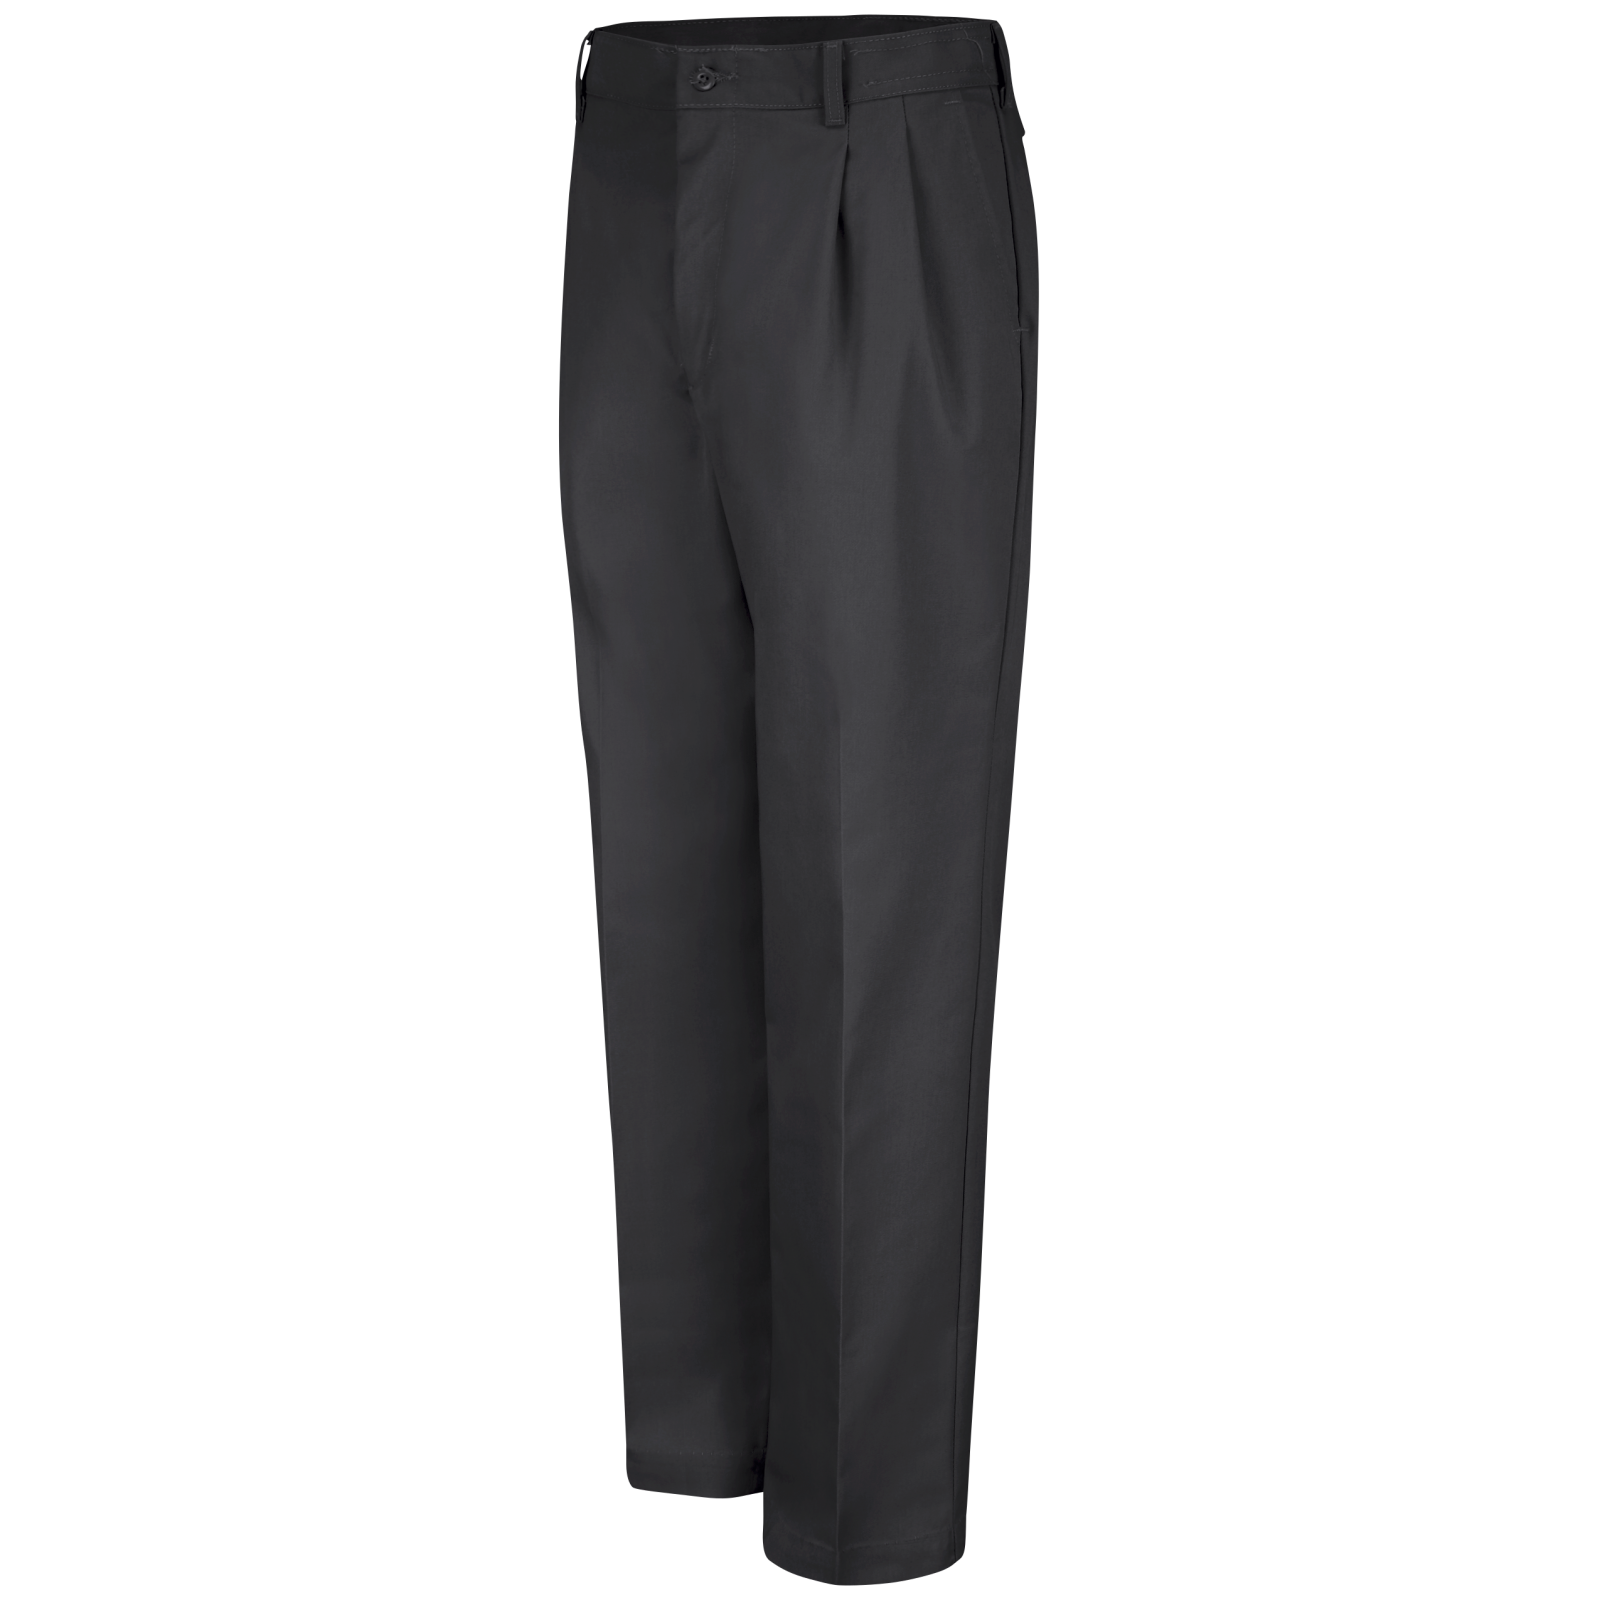 Red Kap Men's Pleated Cotton Slacks Black Work Pants NWT PC46BK0 Size 34 unhem 